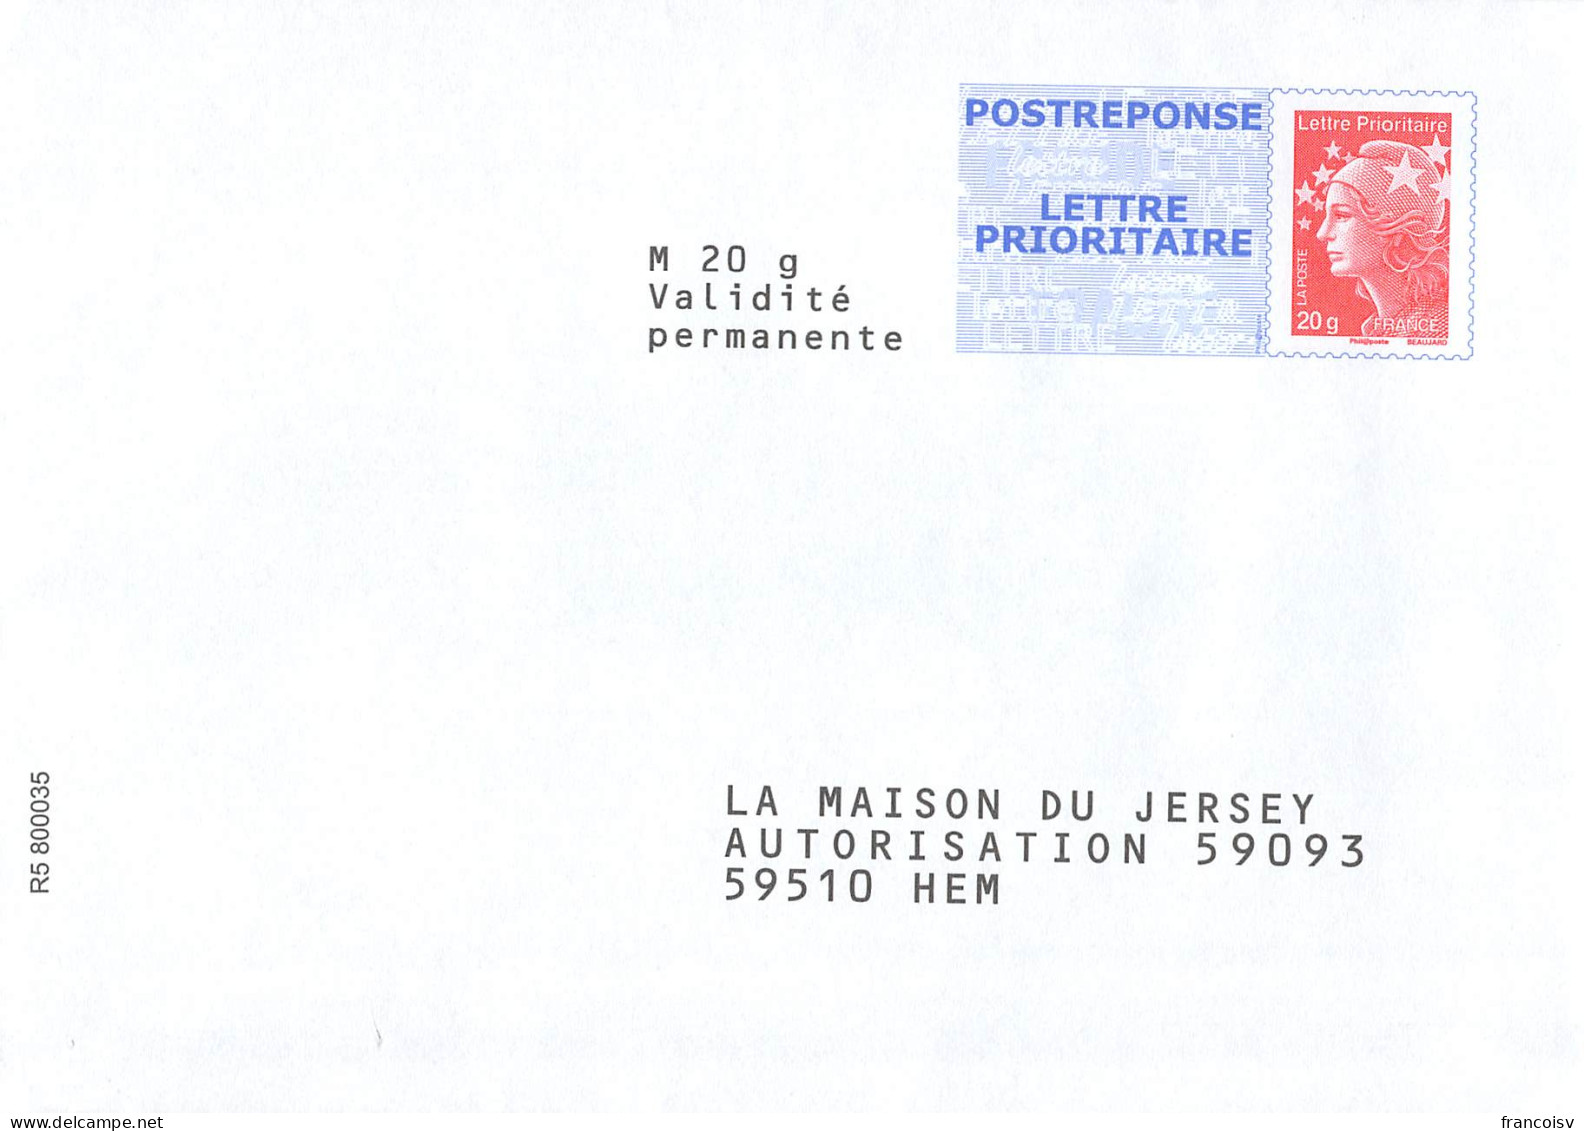 Lot de 33 enveloppes neuves PAP Prêt à poster Postreponse Marianne Ciappa kawena beaujard luquet lamouche... L2